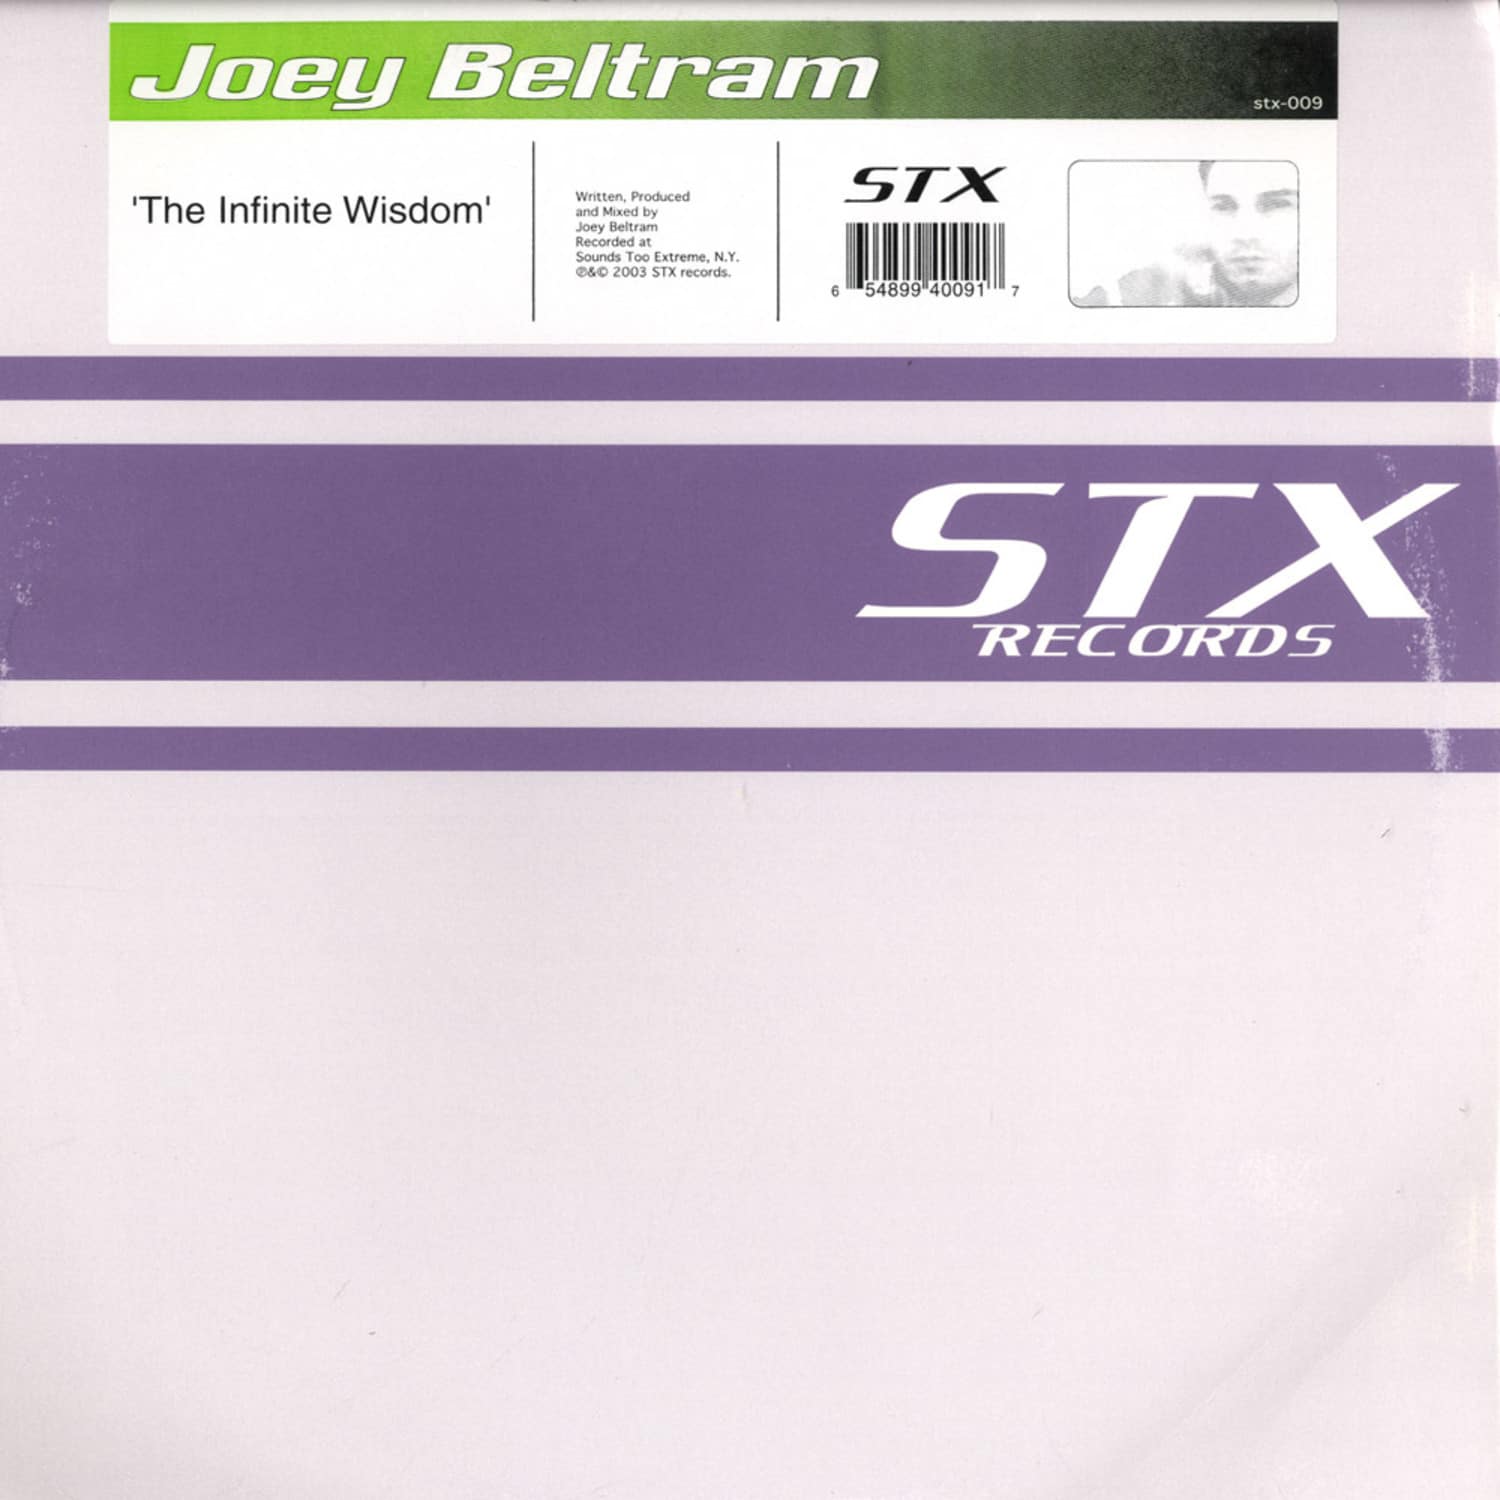 Joey Beltram - THE INFINITE WISDOM